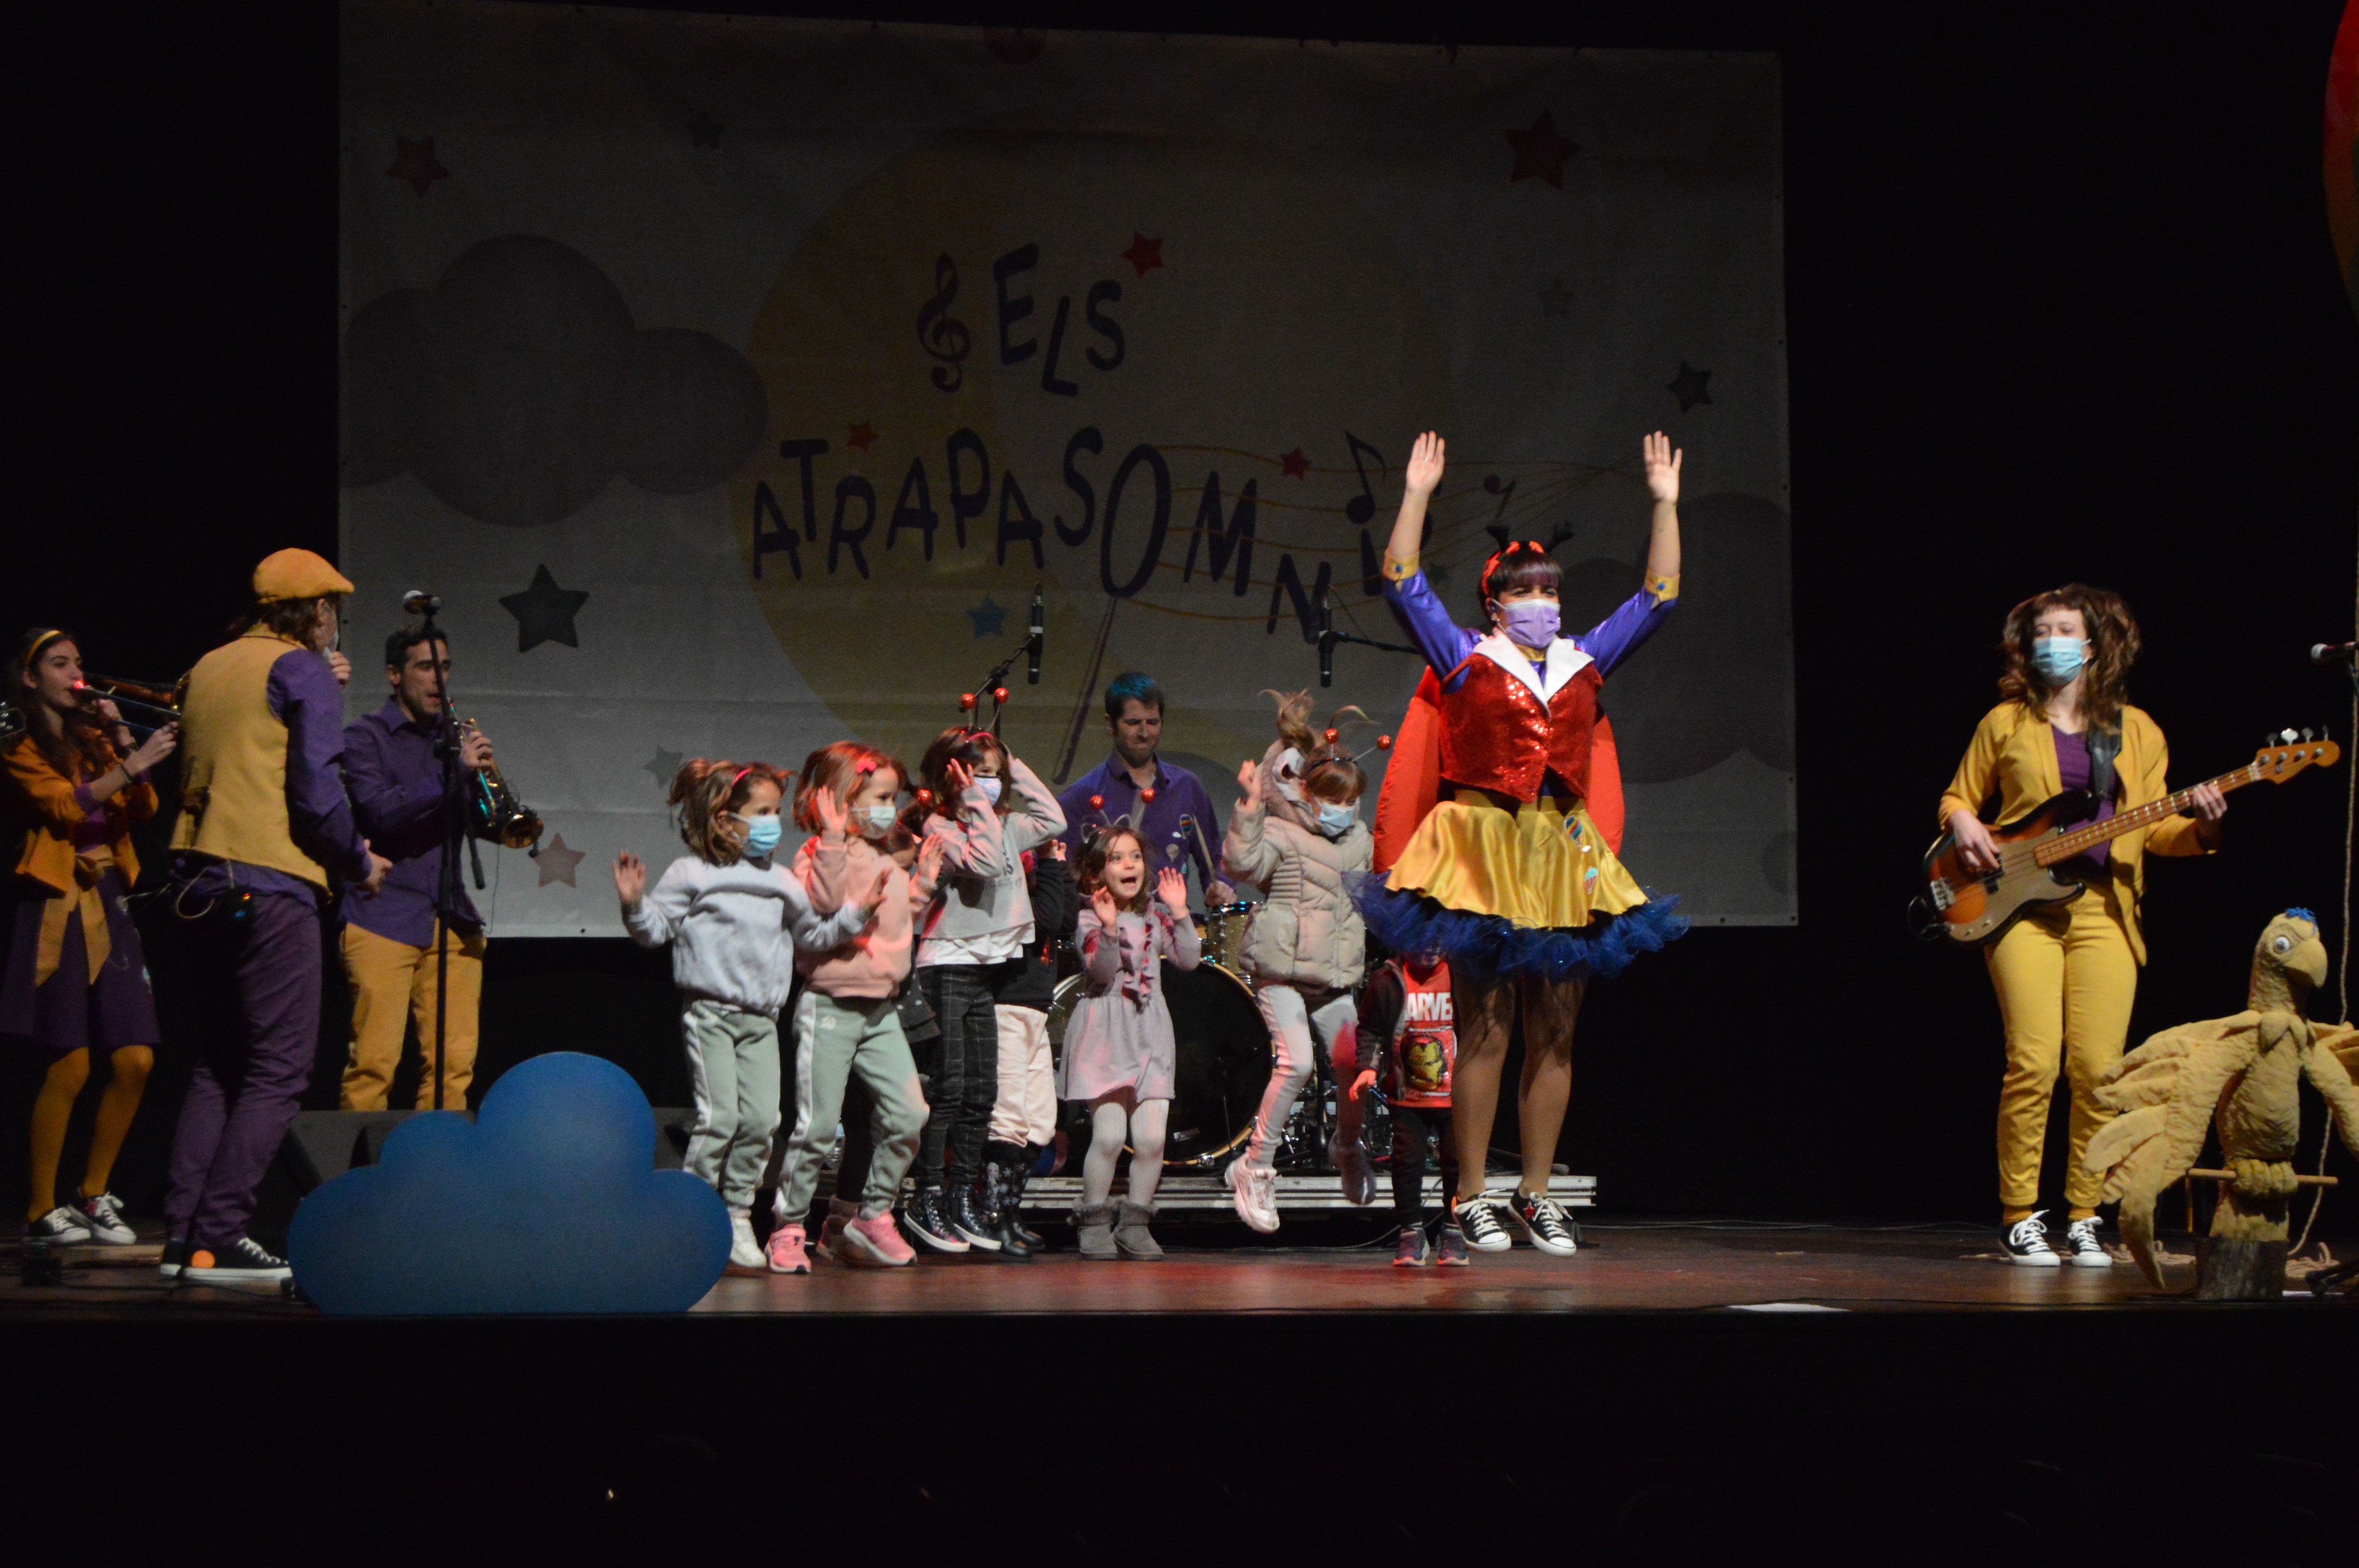 Espectacle 'Anem amunt' del grup Atrapasomnis. FOTO: Nora Muñoz Otero